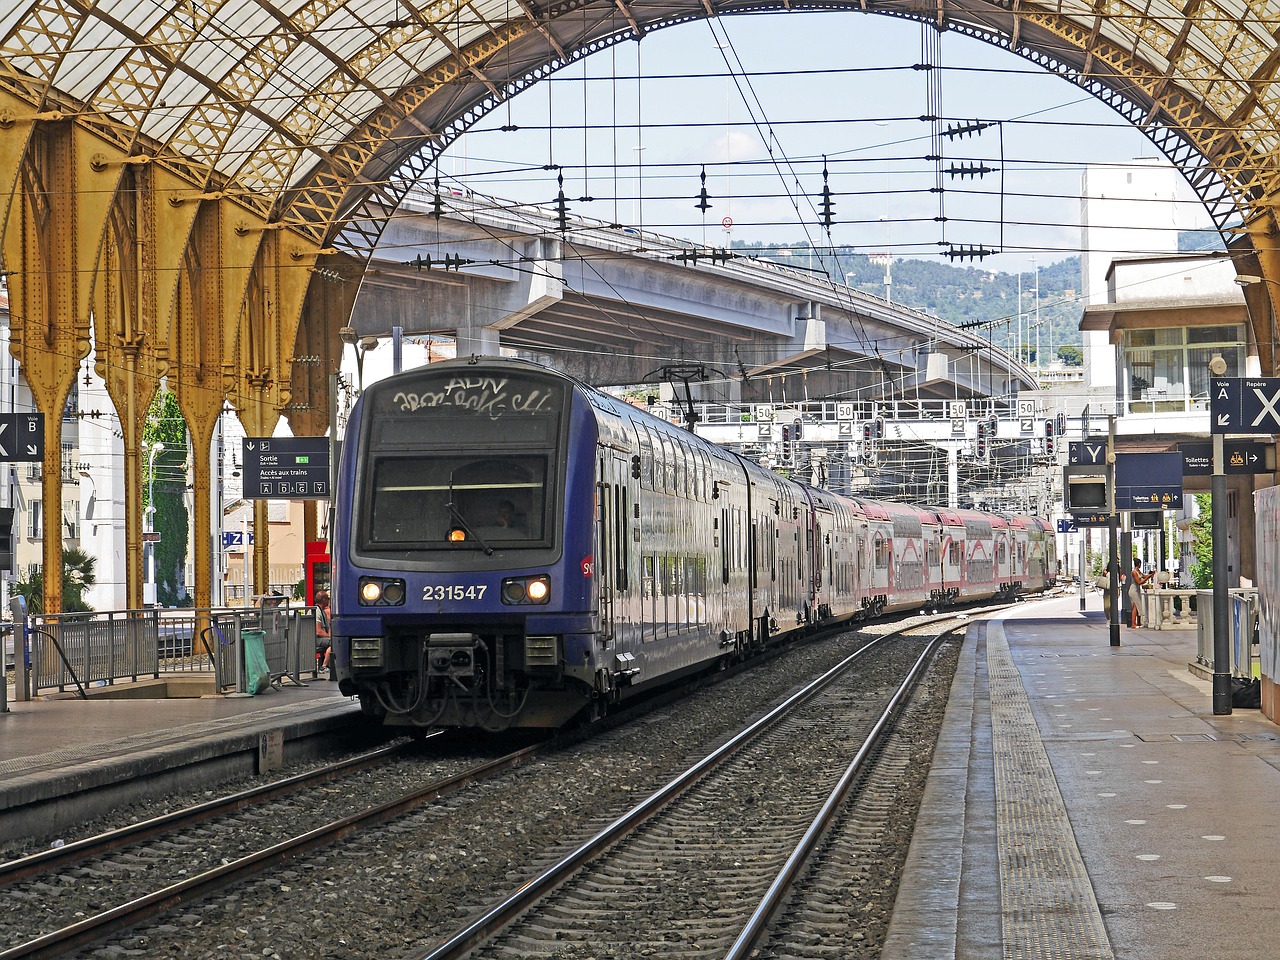 Le Parlement européen en faveur d’une meilleure indemnisation des trains en retard